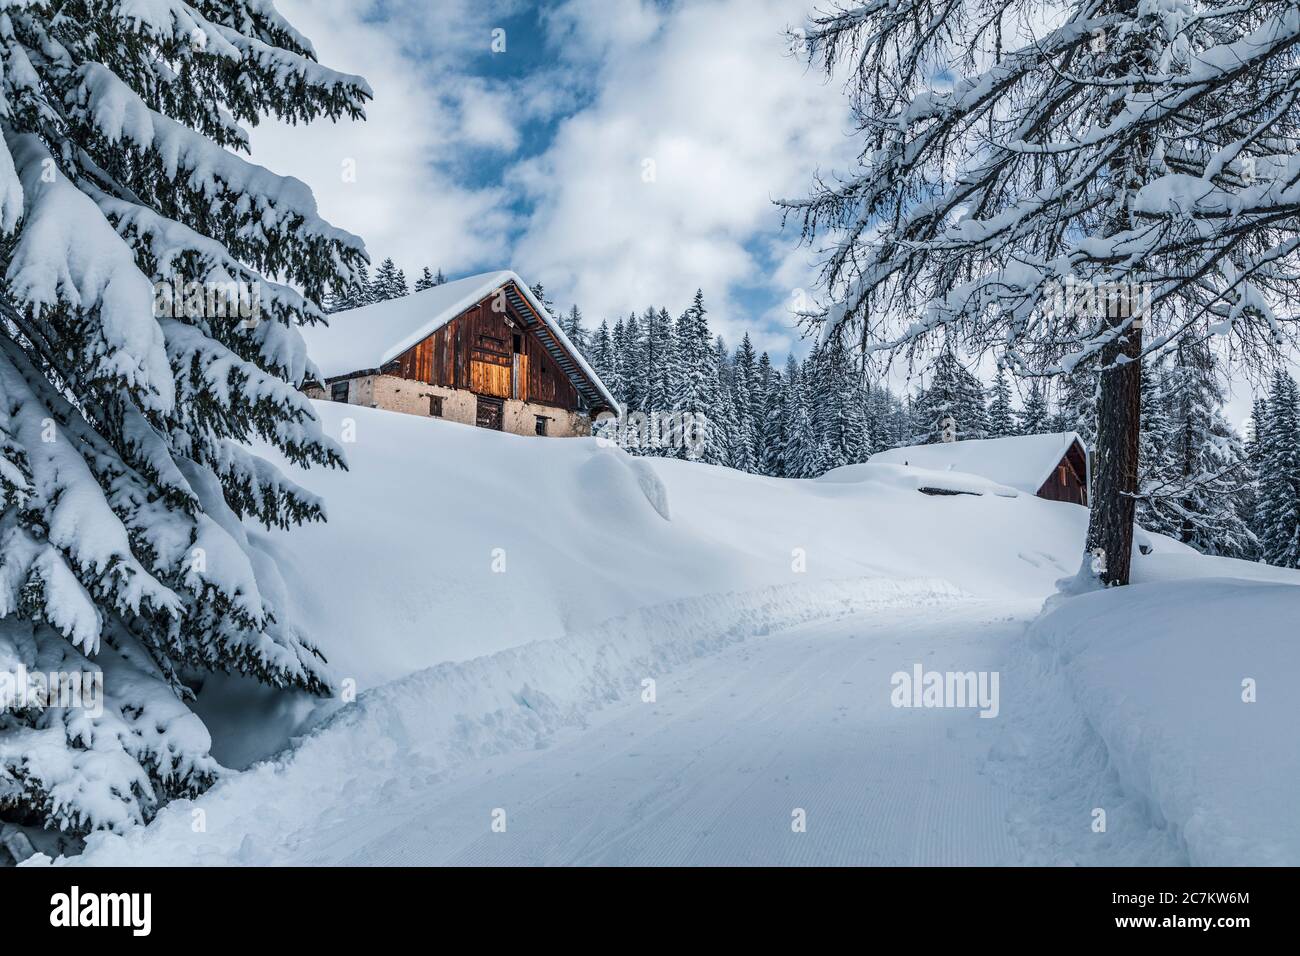 Snowy forest near Fedarola alm, winter in Dolomites, Cortina d'Ampezzo, Belluno, Veneto, Italy Stock Photo